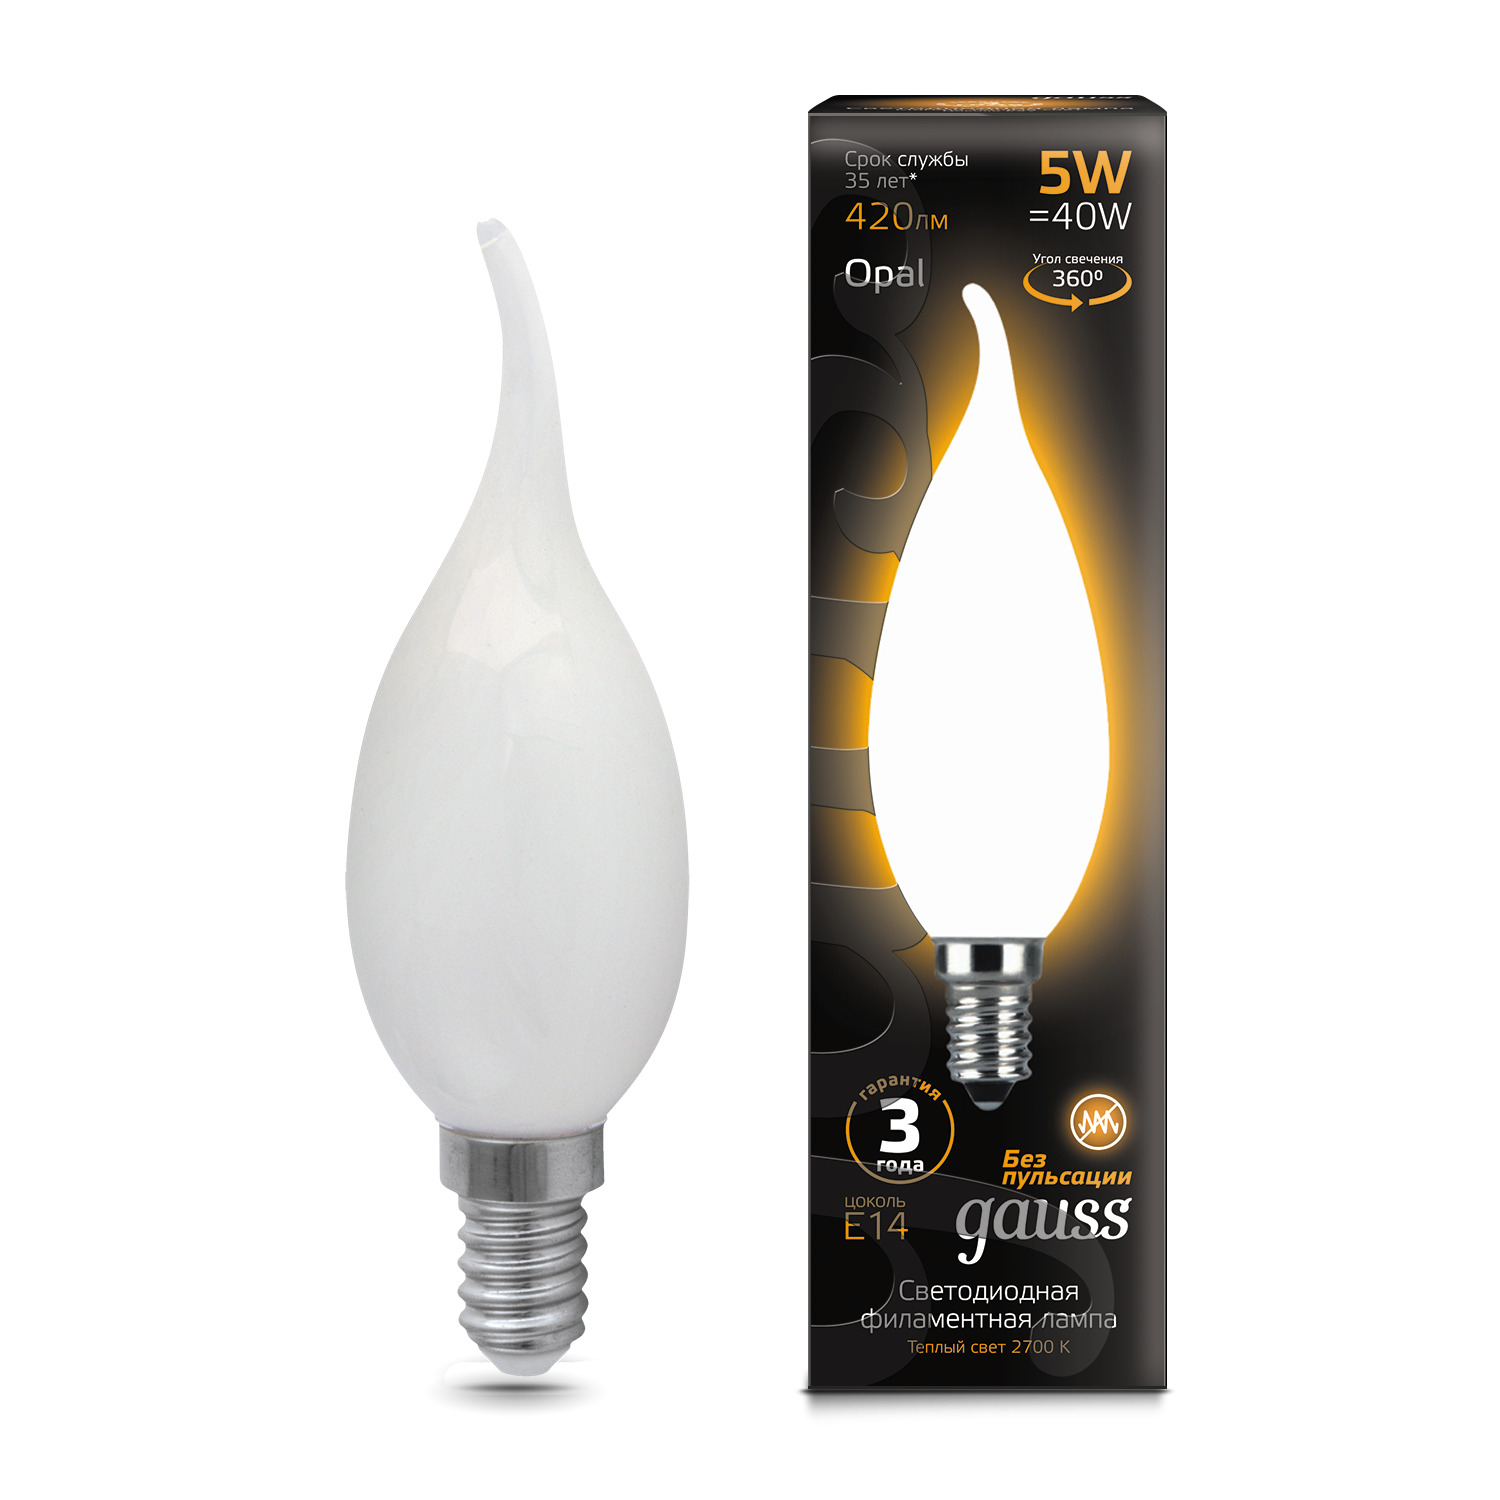 Лампа Gauss LED Filament Свеча на ветру OPAL E14 5W 420lm 2700К 1/10/50 светодиодная лампа gauss свеча 5w 420lm 2700k e14 103801105